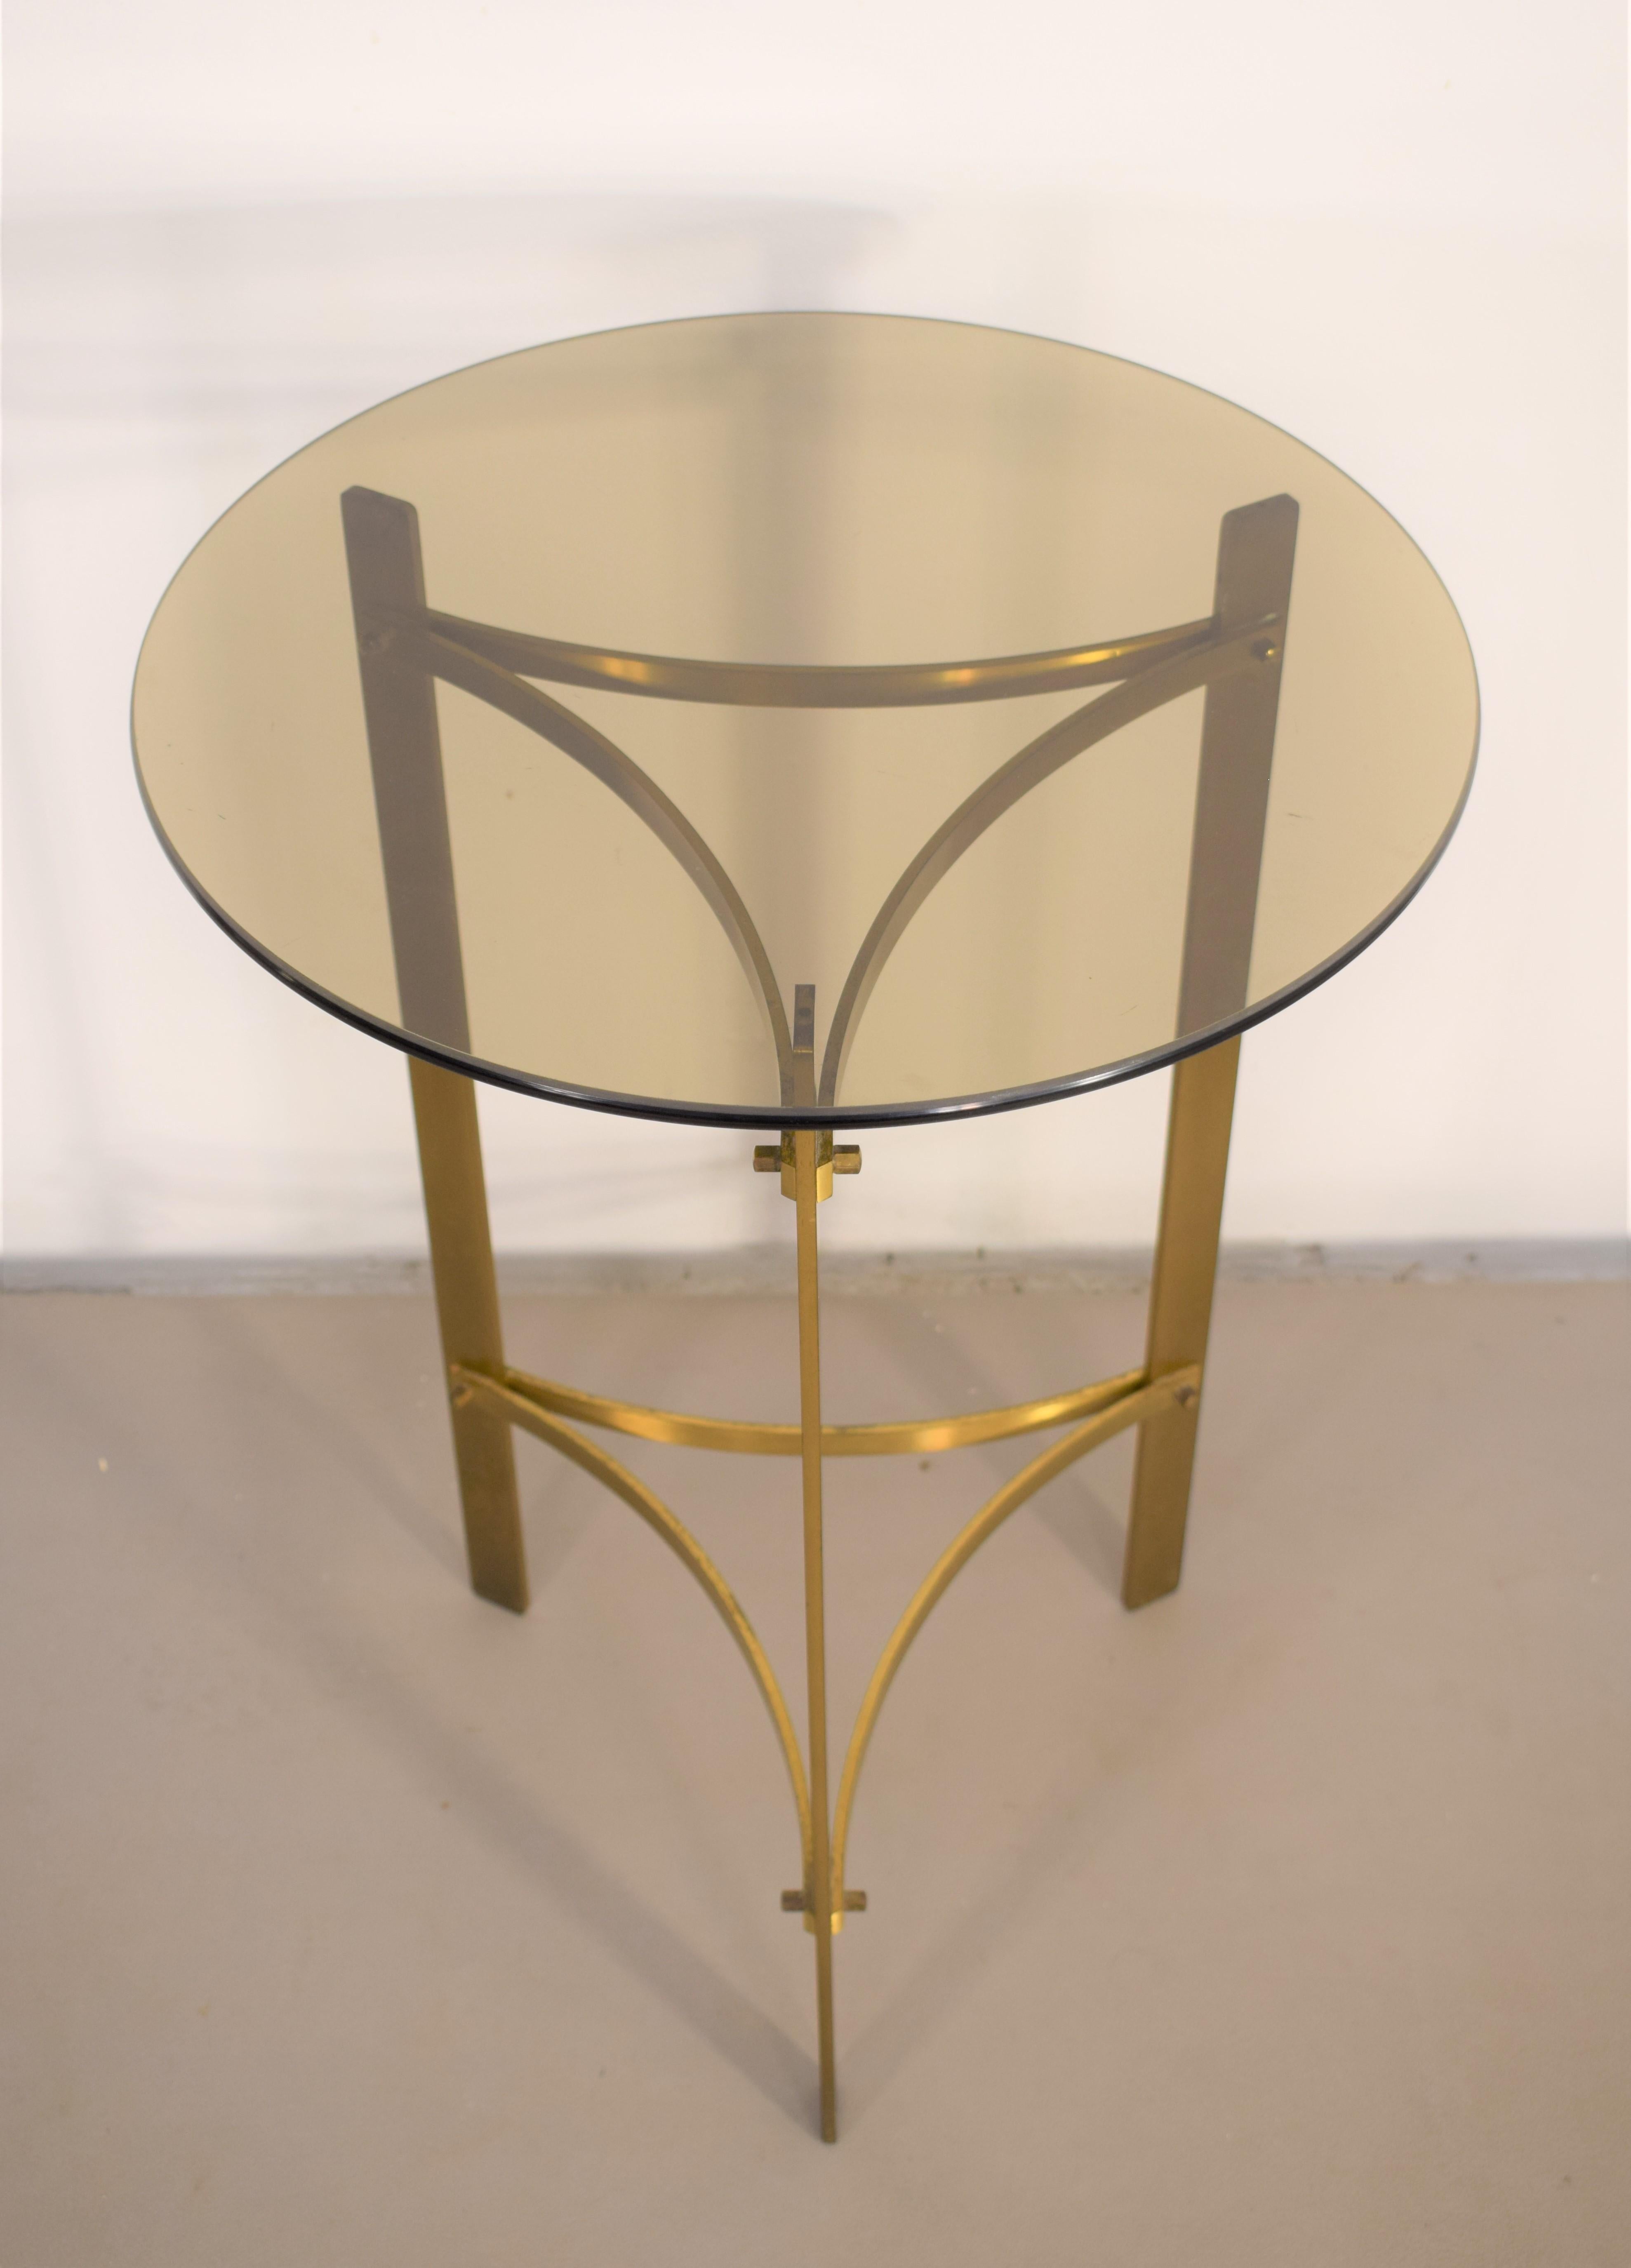 Table basse ronde italienne, laiton et verre fumé, années 1960.

Dimensions : H= 61 cm ; P= 44 cm : H= 61 cm ; D= 44 cm.